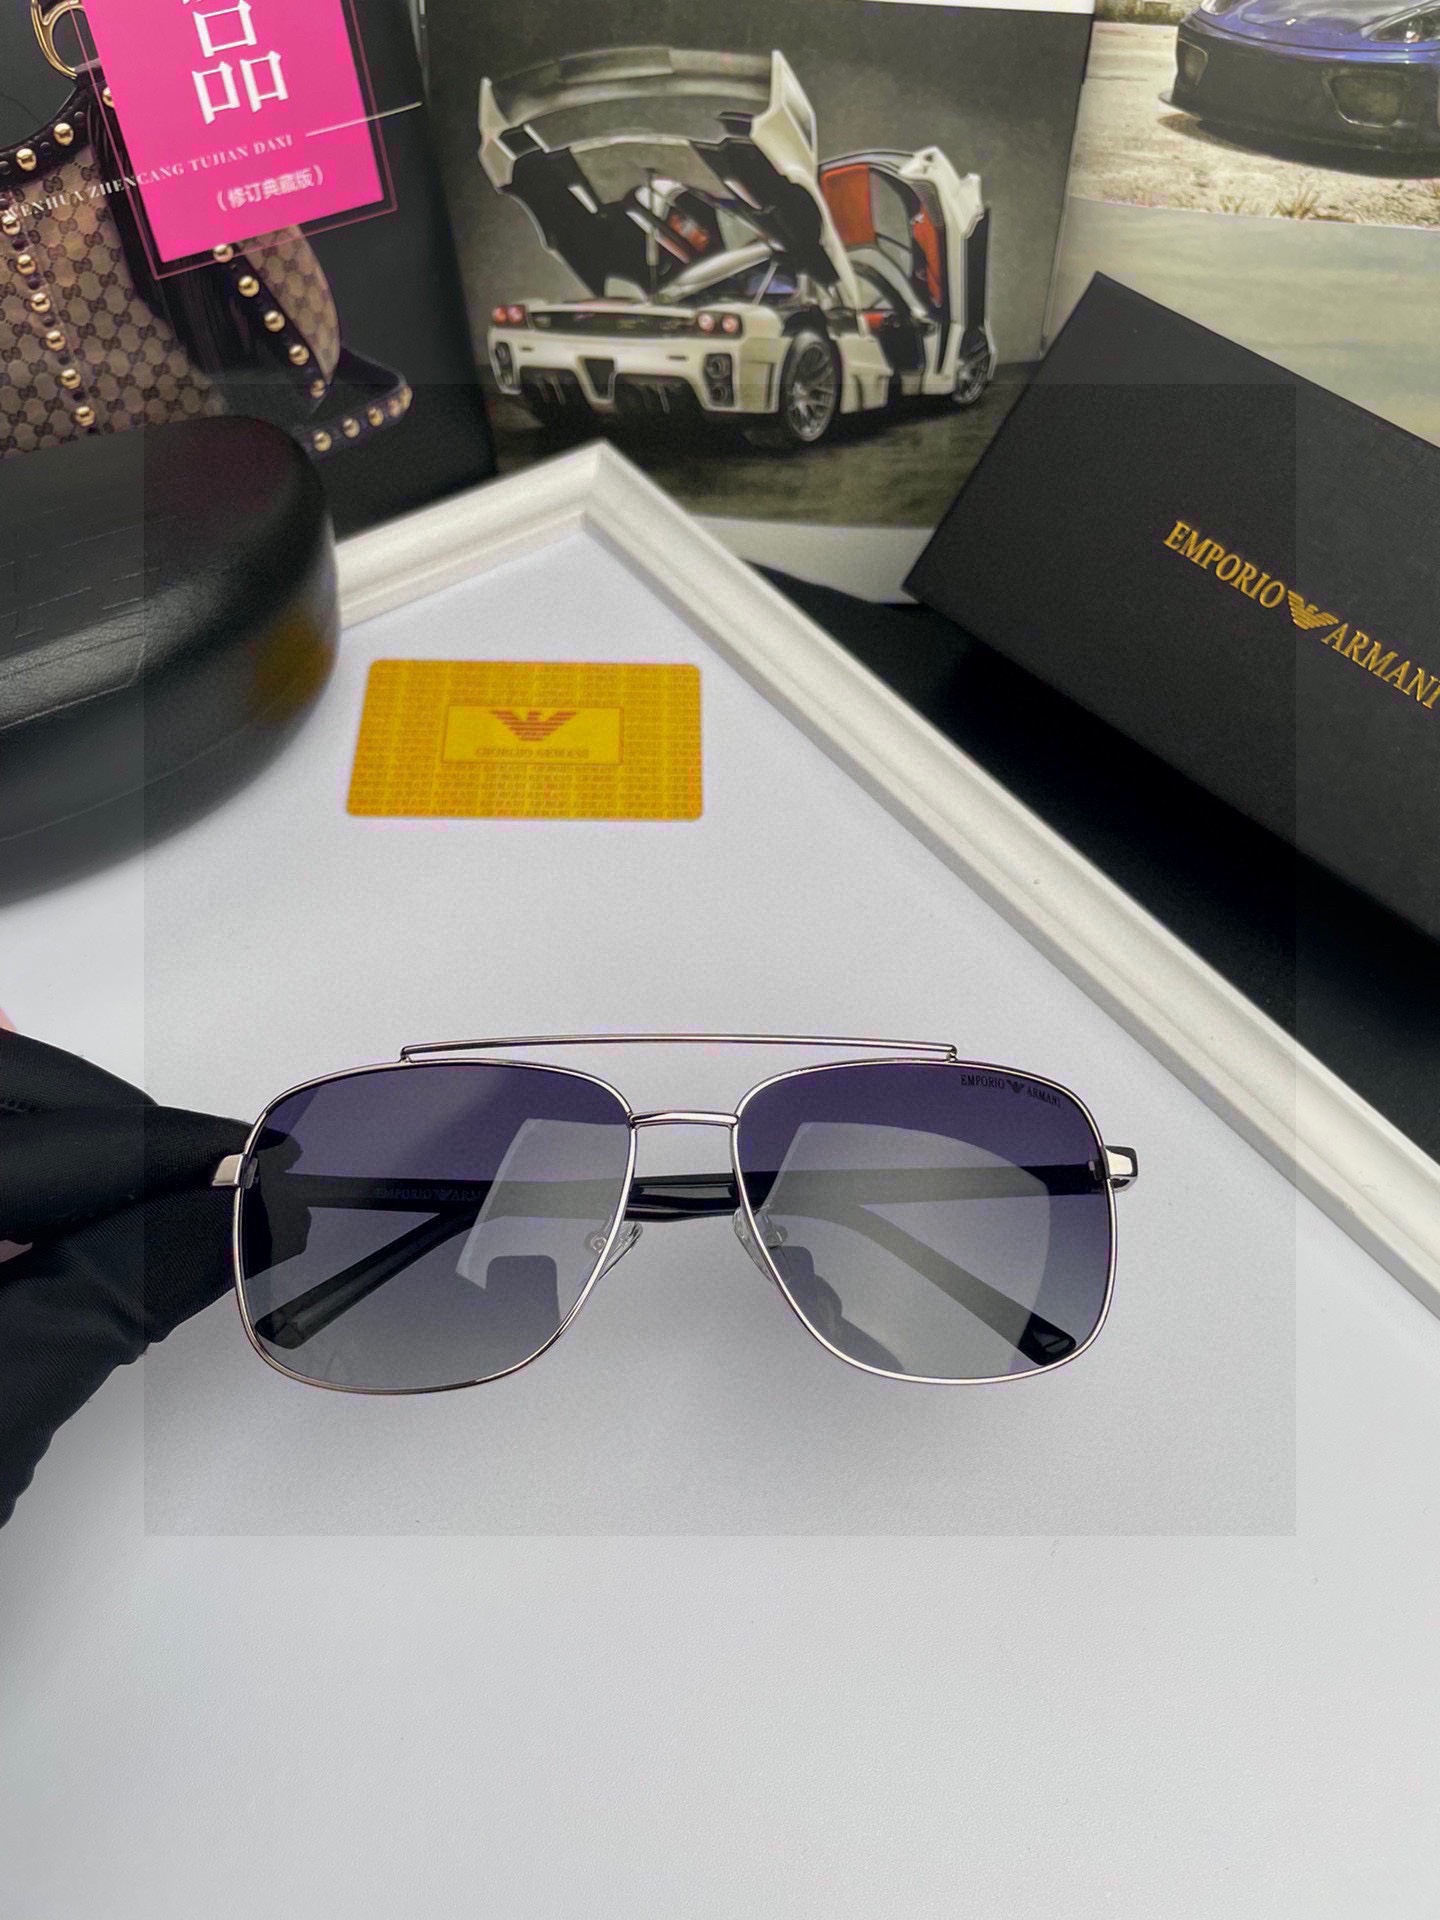 新款品牌阿玛尼ARMANI原单品质男士偏光太阳镜️材质高清宝丽来偏光镜片进口合金金属镜框板材印字logo